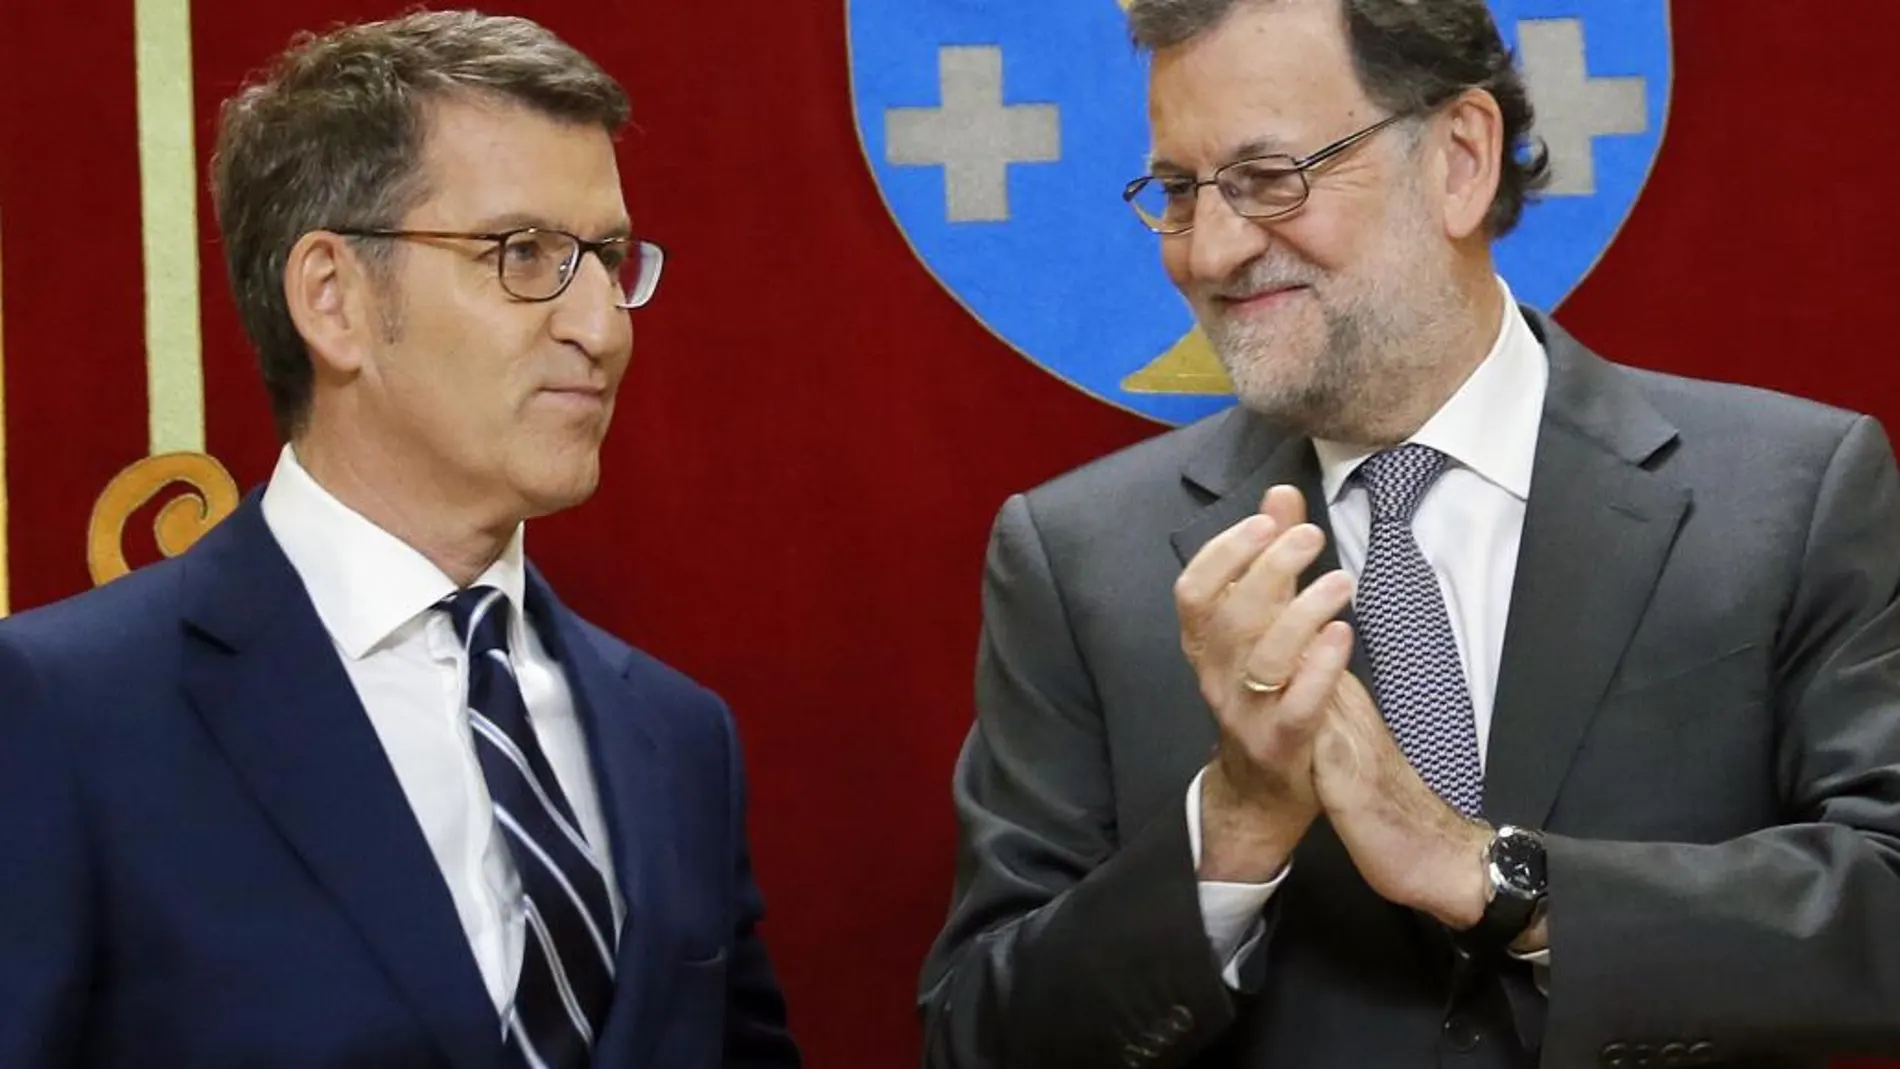 Alberto Núñez Feijóo, tras prometer su cargo como presidente de la Xunta de Galicia, en presencia del presidente del Gobierno, Mariano Rajoy